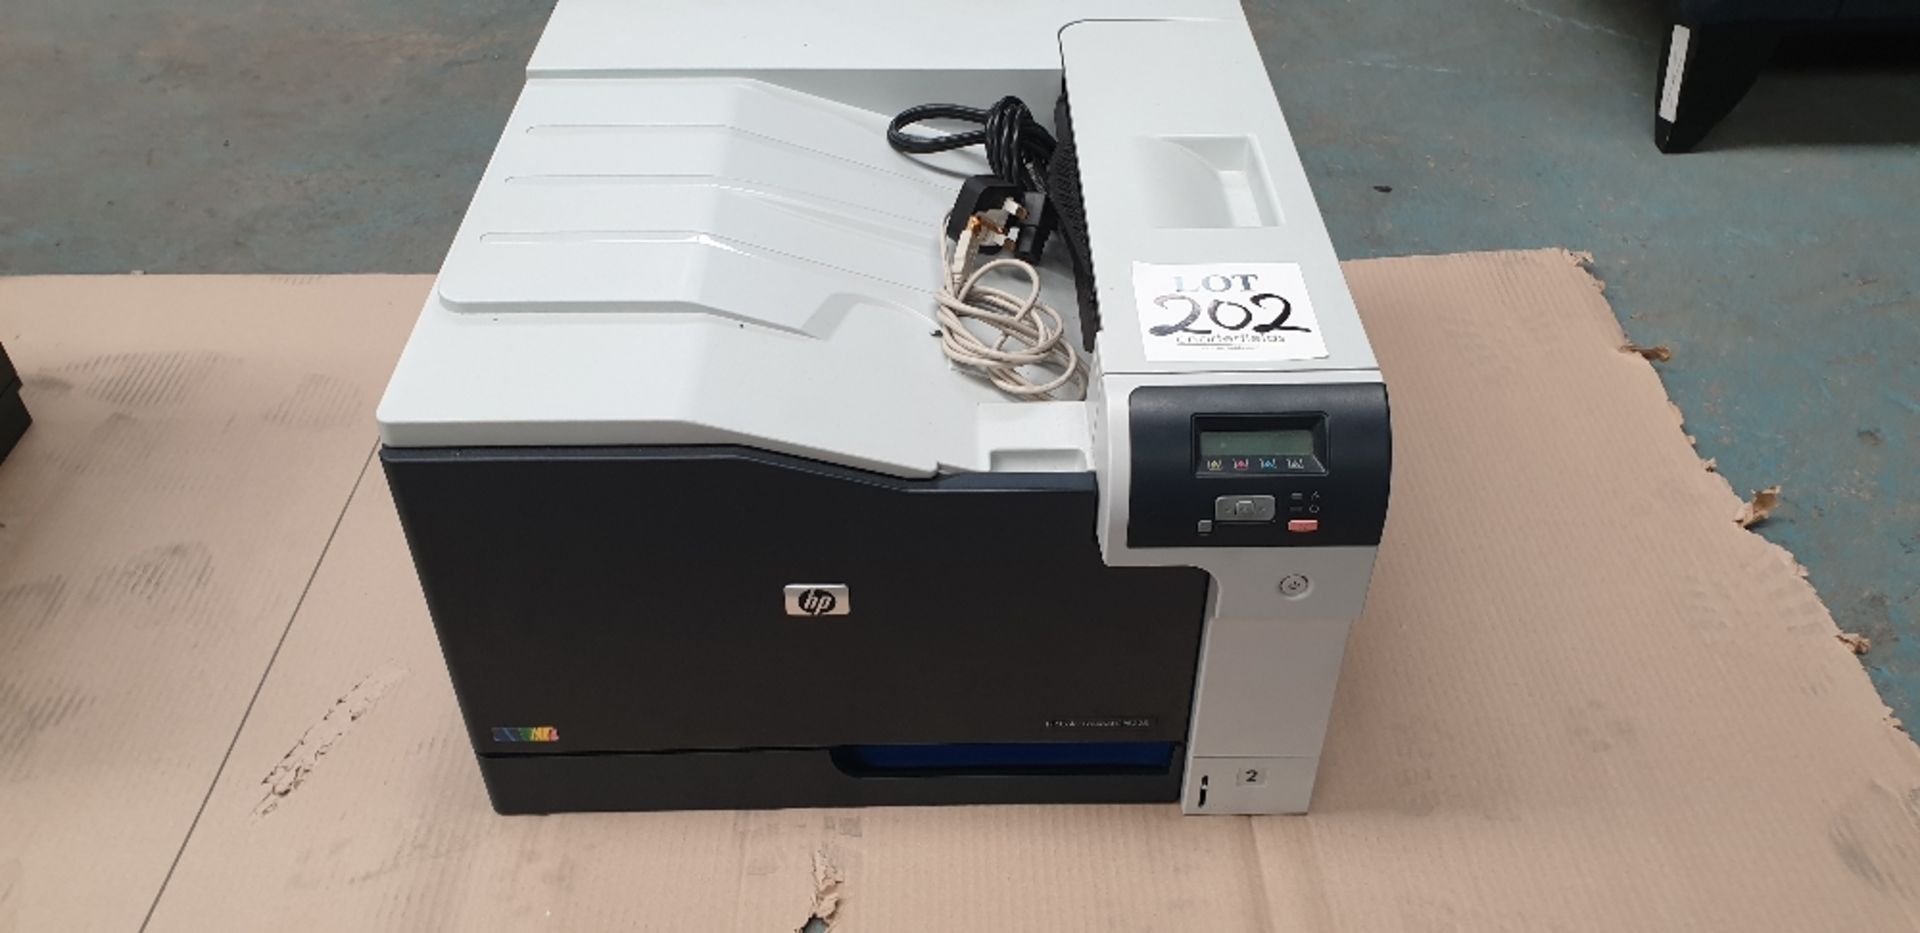 HP colour LaserJet CP5225 printer